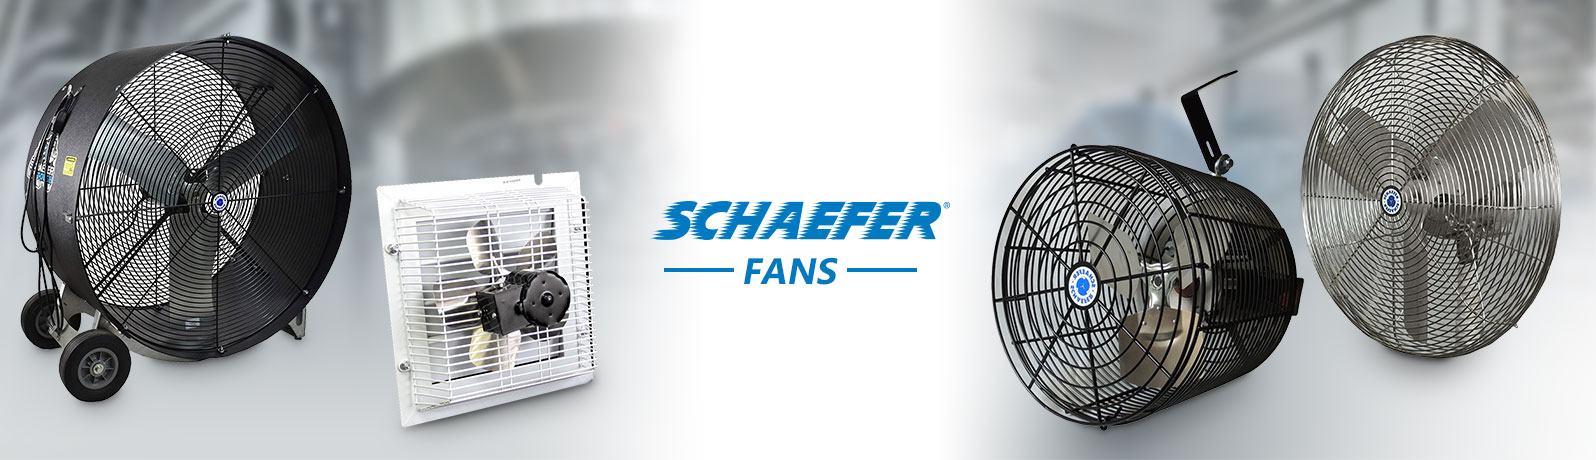 Schaefer Fans